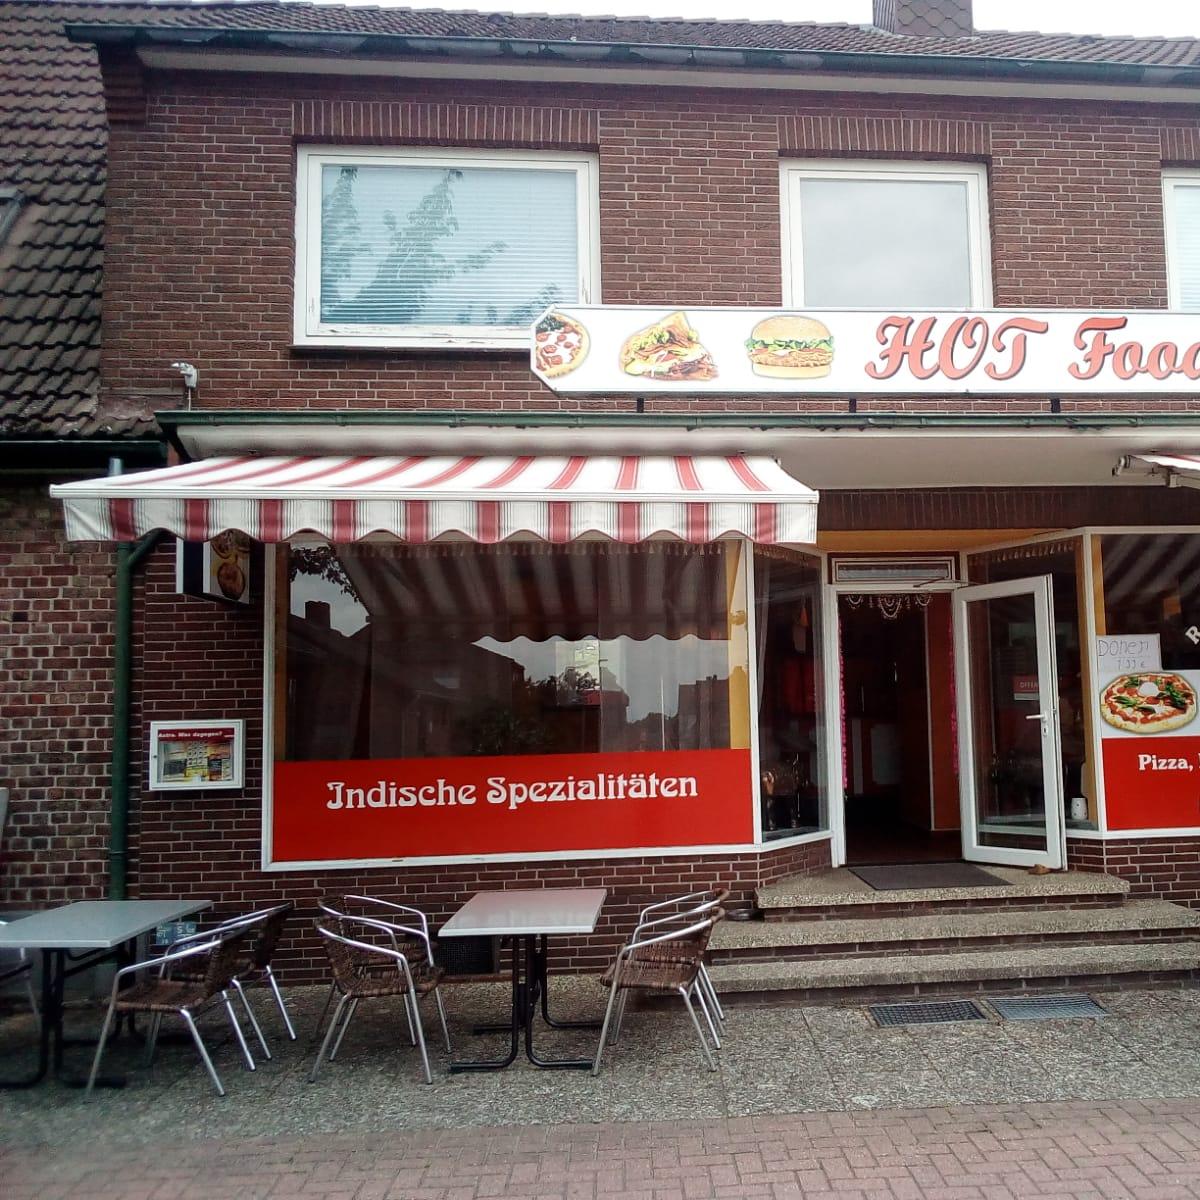 Restaurant "HOT Food" in Schneverdingen